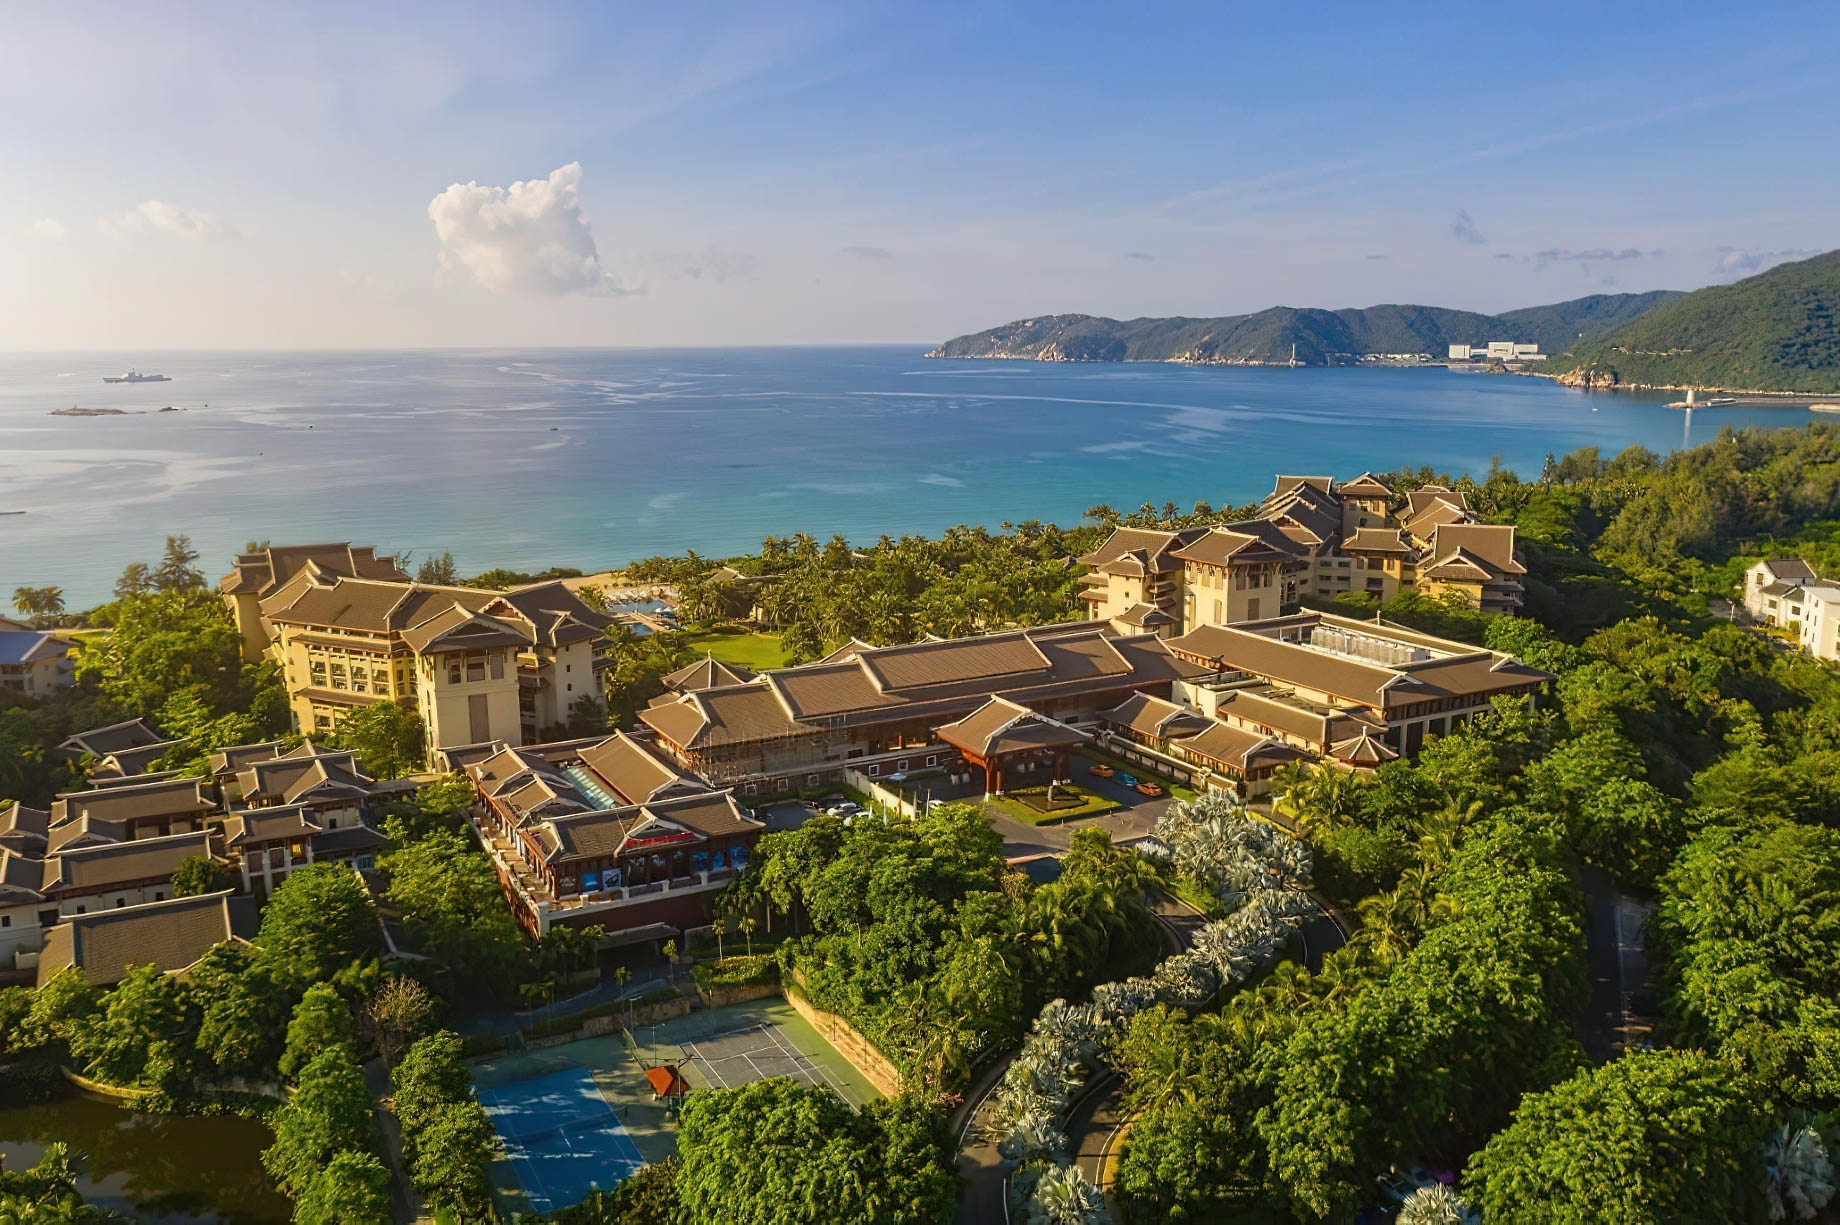 The Ritz-Carlton Sanya, Yalong Bay Hotel - Hainan, China - Hotel Ocean View Aerial